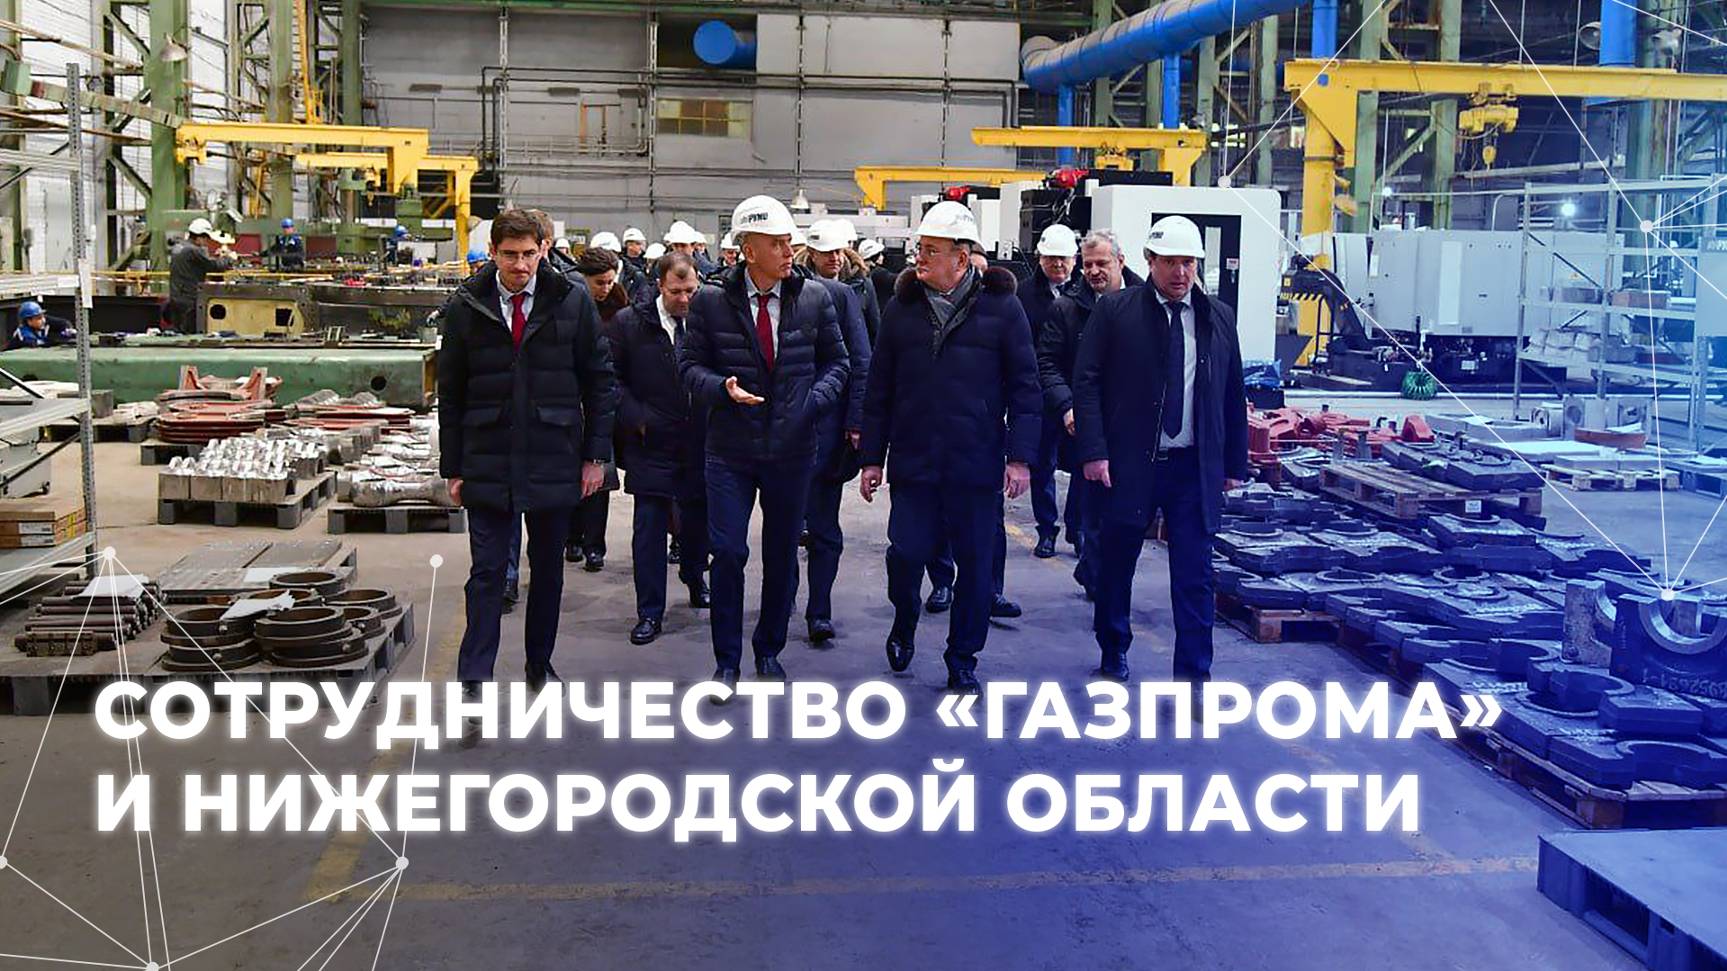 Сотрудничество «Газпрома» и Нижегородской области